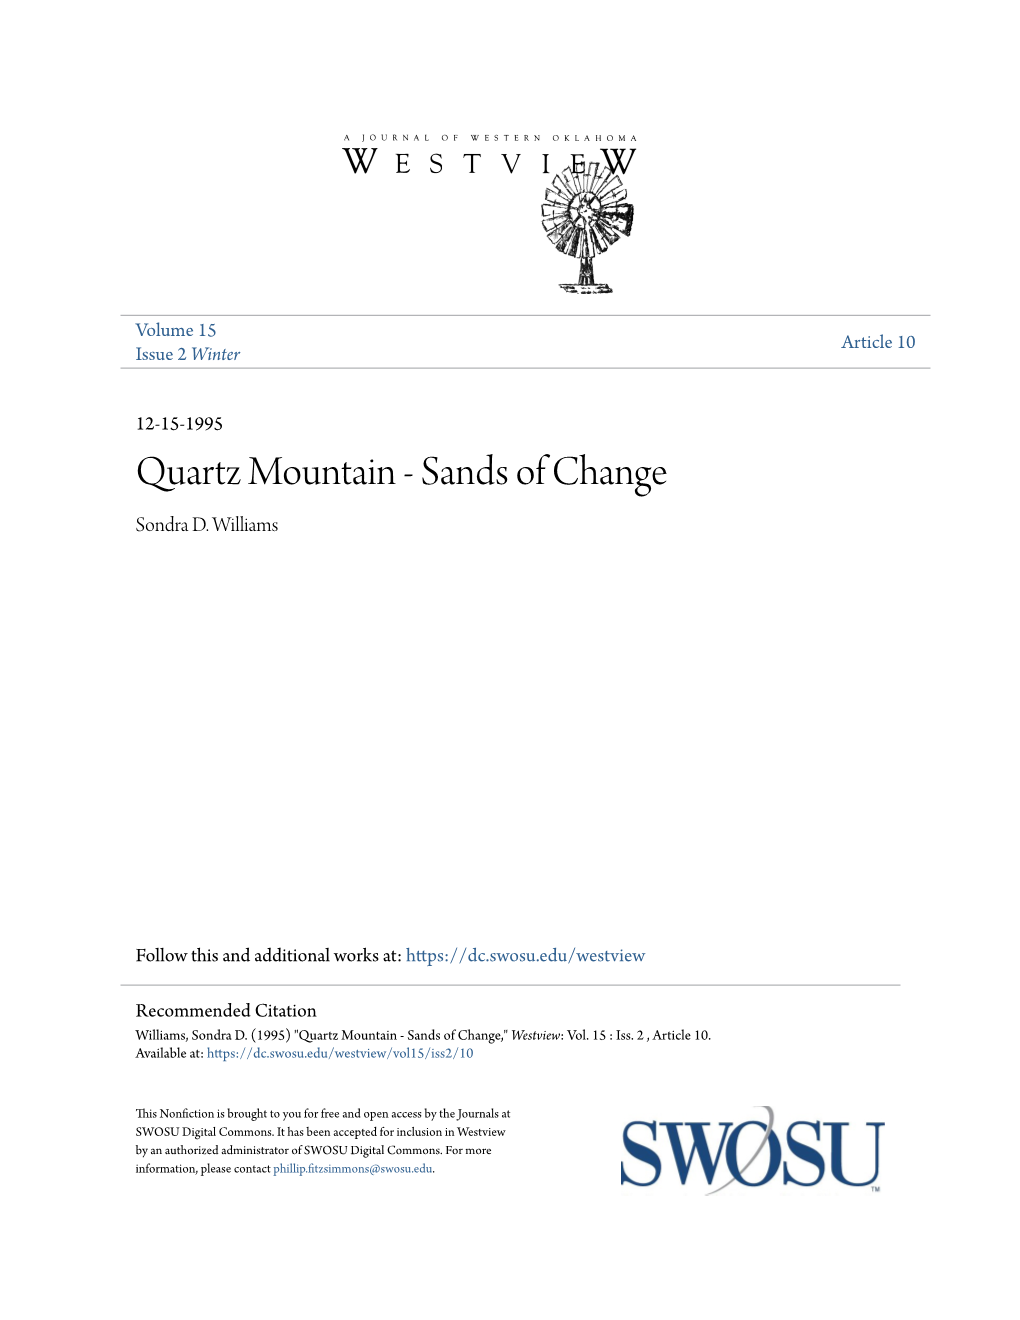 Quartz Mountain - Sands of Change Sondra D